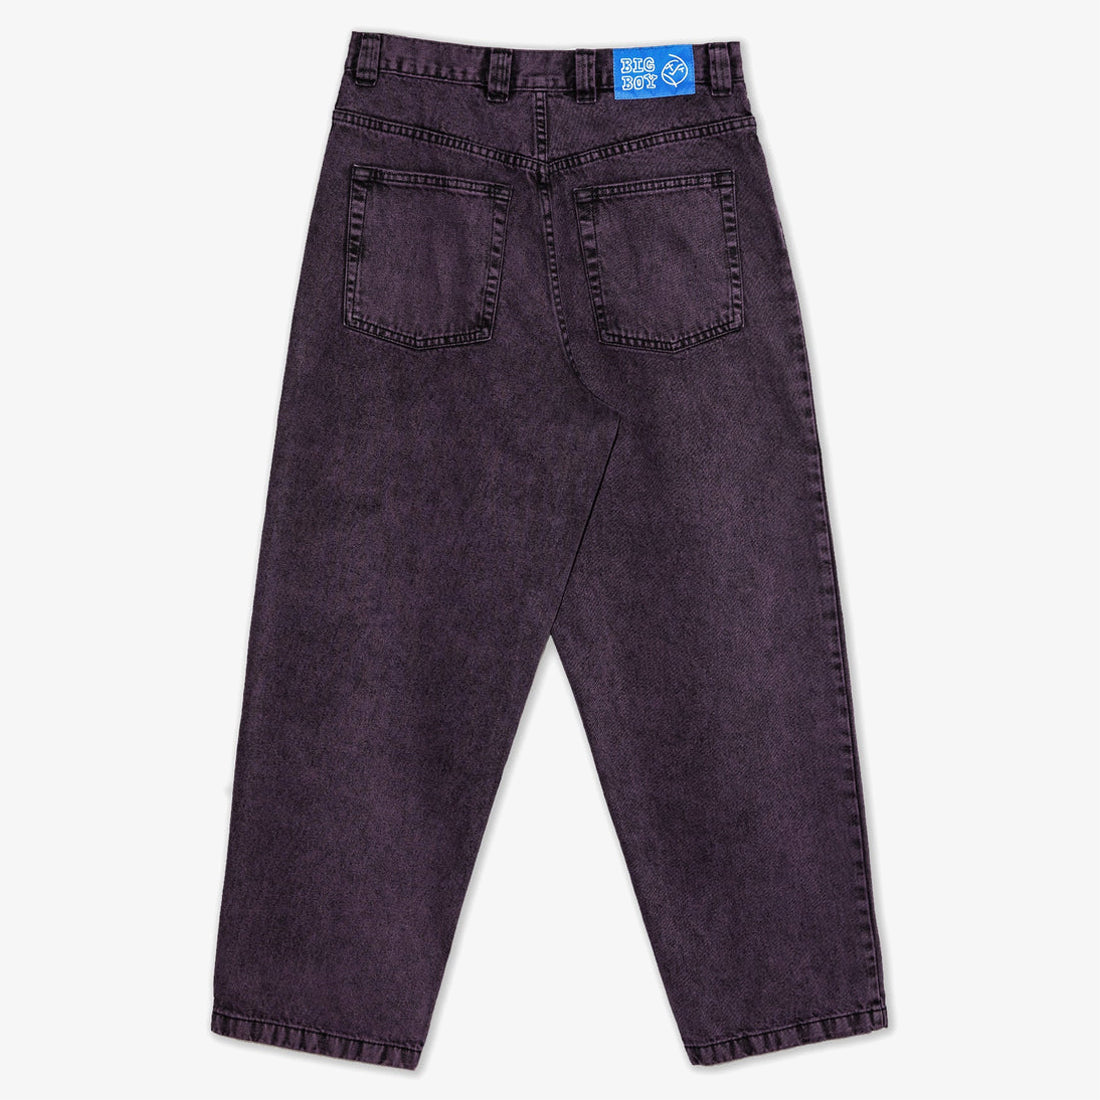 Big Boy Jeans (Purple Black) - 510 Skateboarding